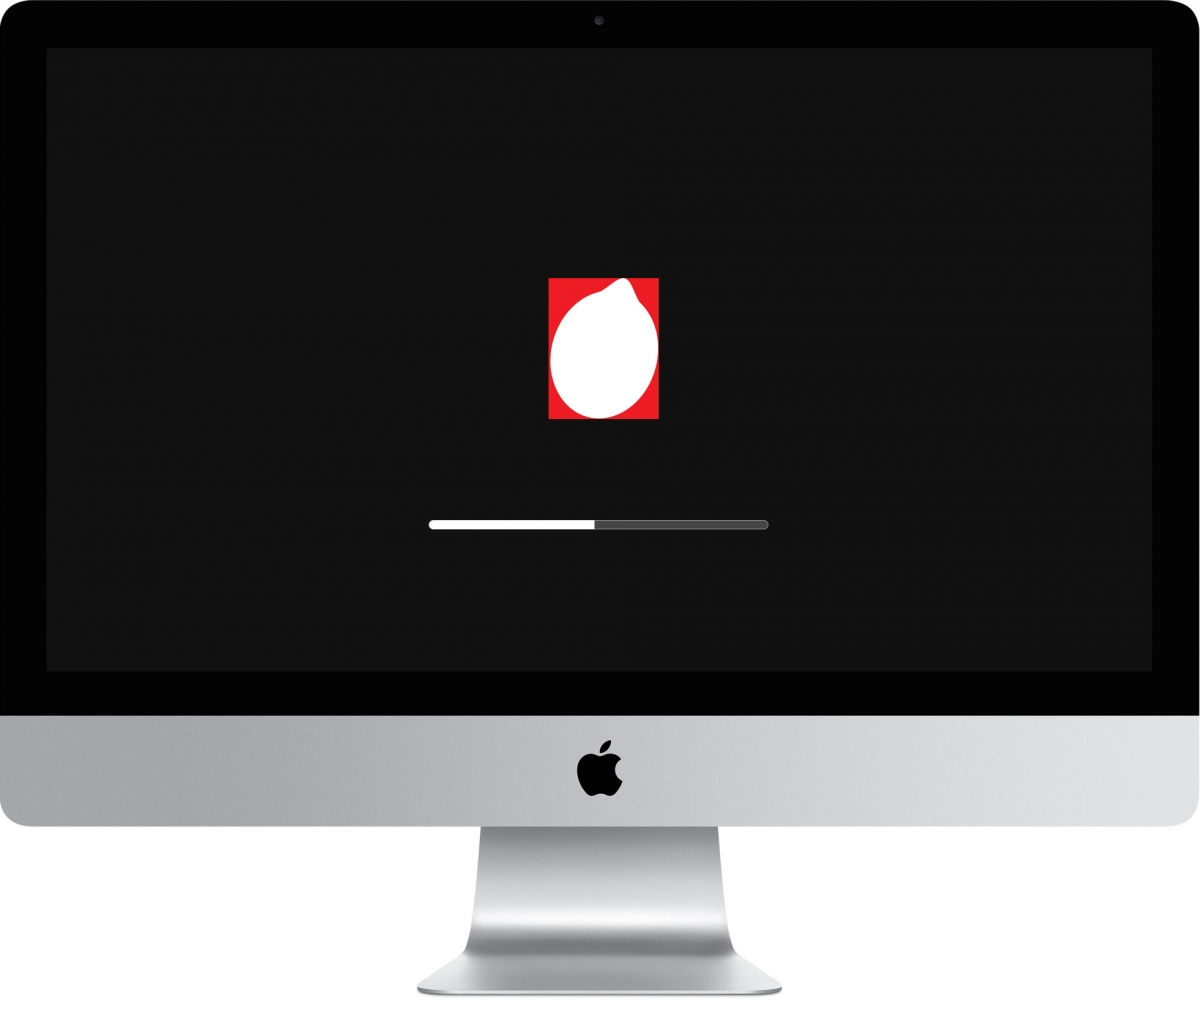 Lemon iMac startup screen